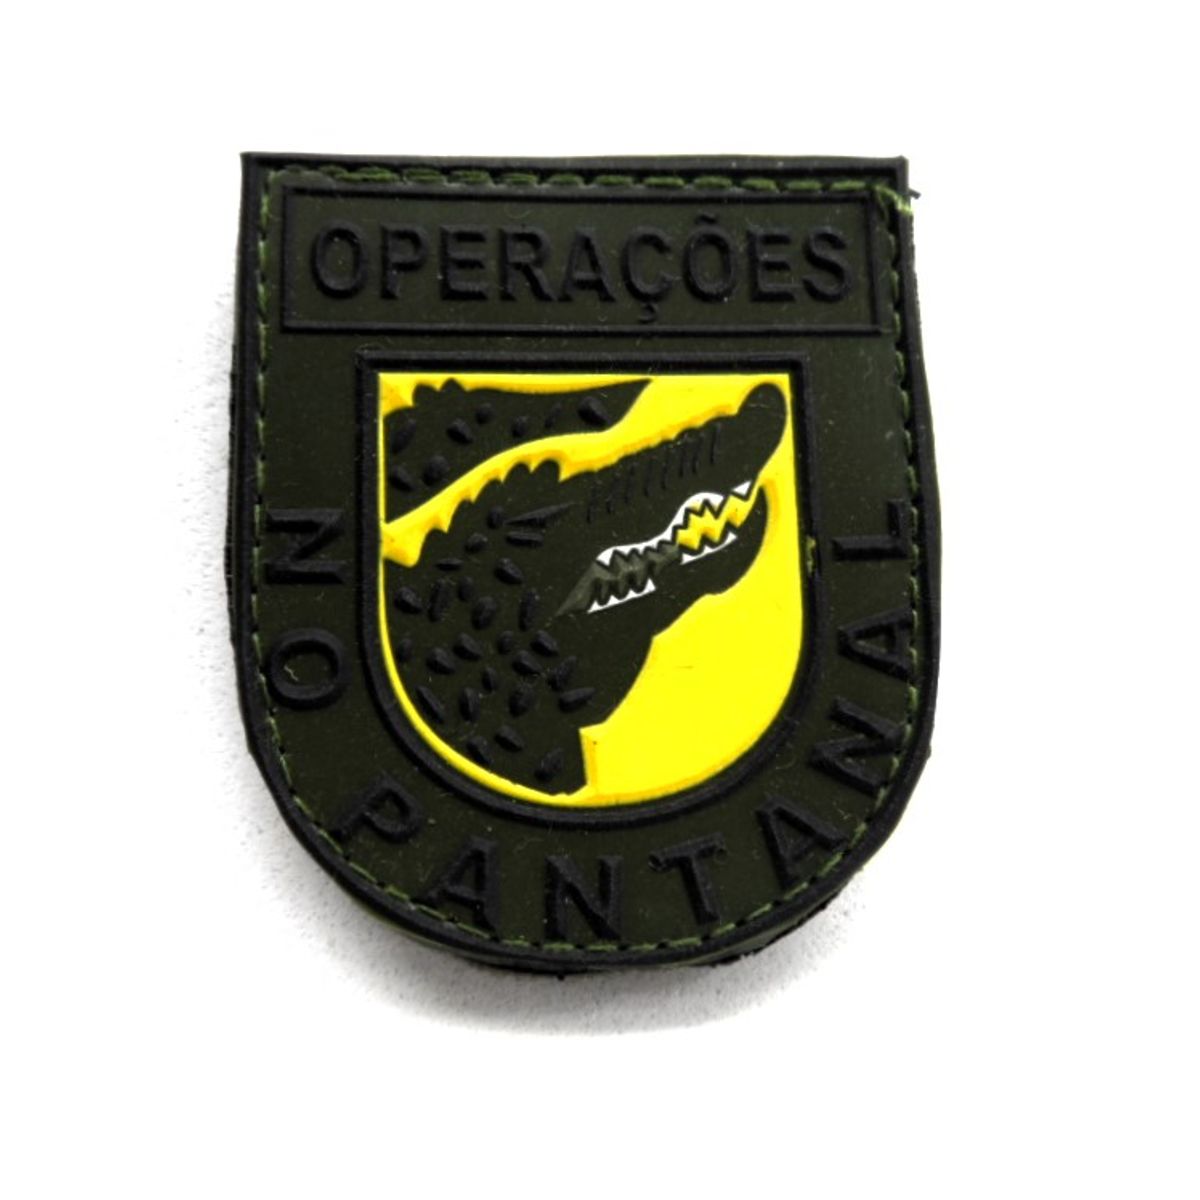 Patch / Emborrachado - Operações No Pantanal - Exército Brasileiro